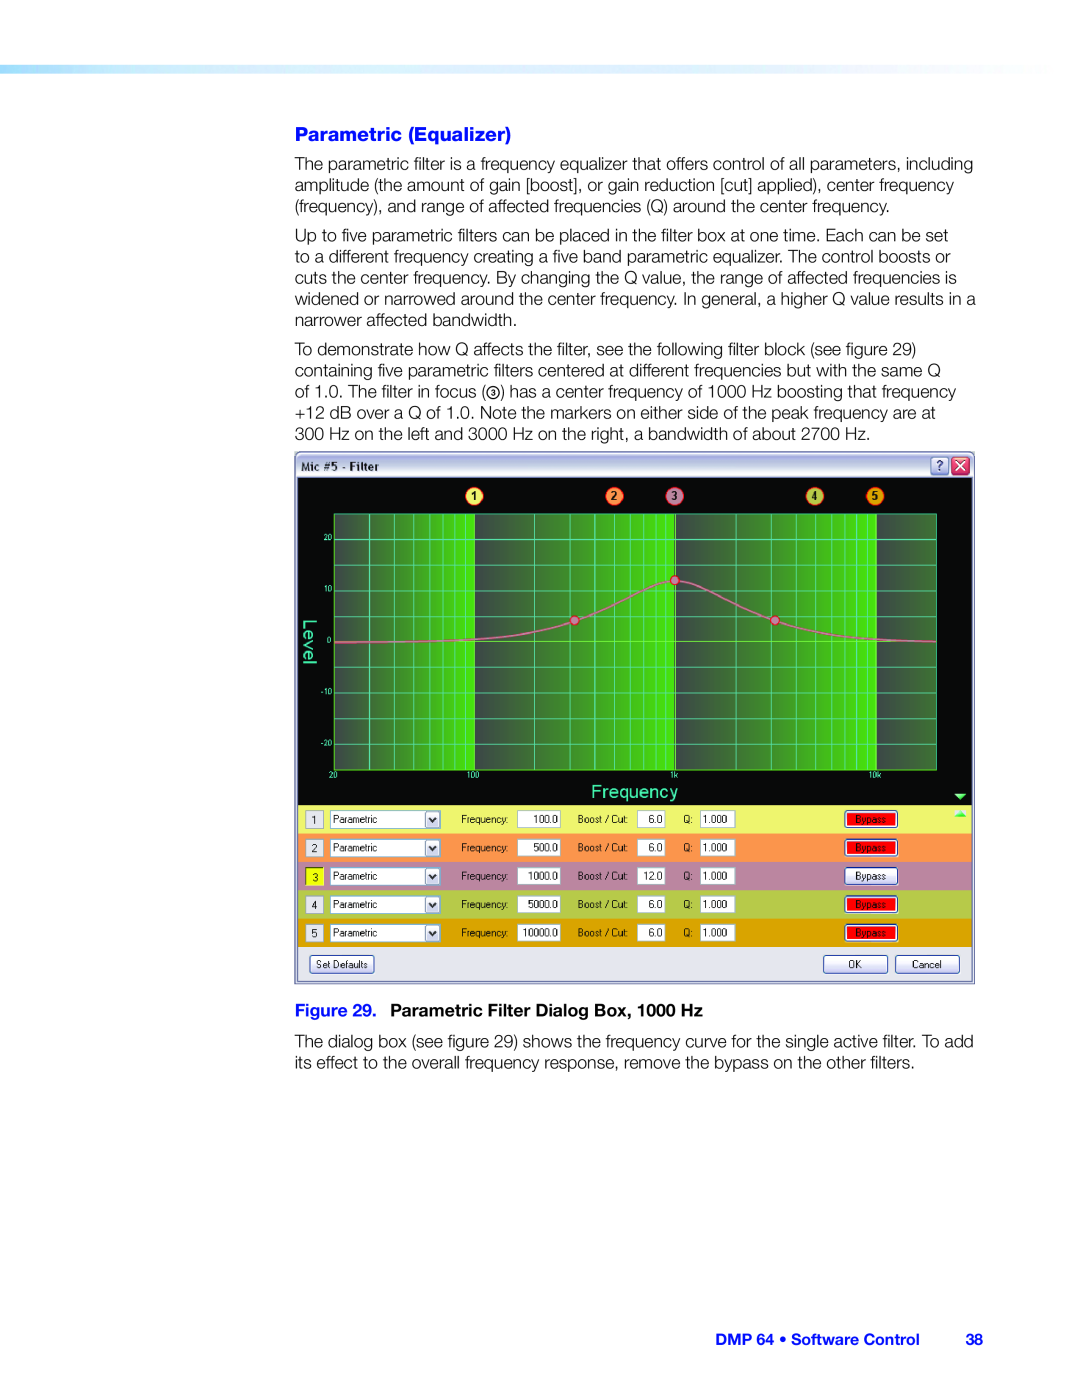 Extron electronic DMP 64 manual Parametric Equalizer, Parametric Filter Dialog Box, 1000 Hz 